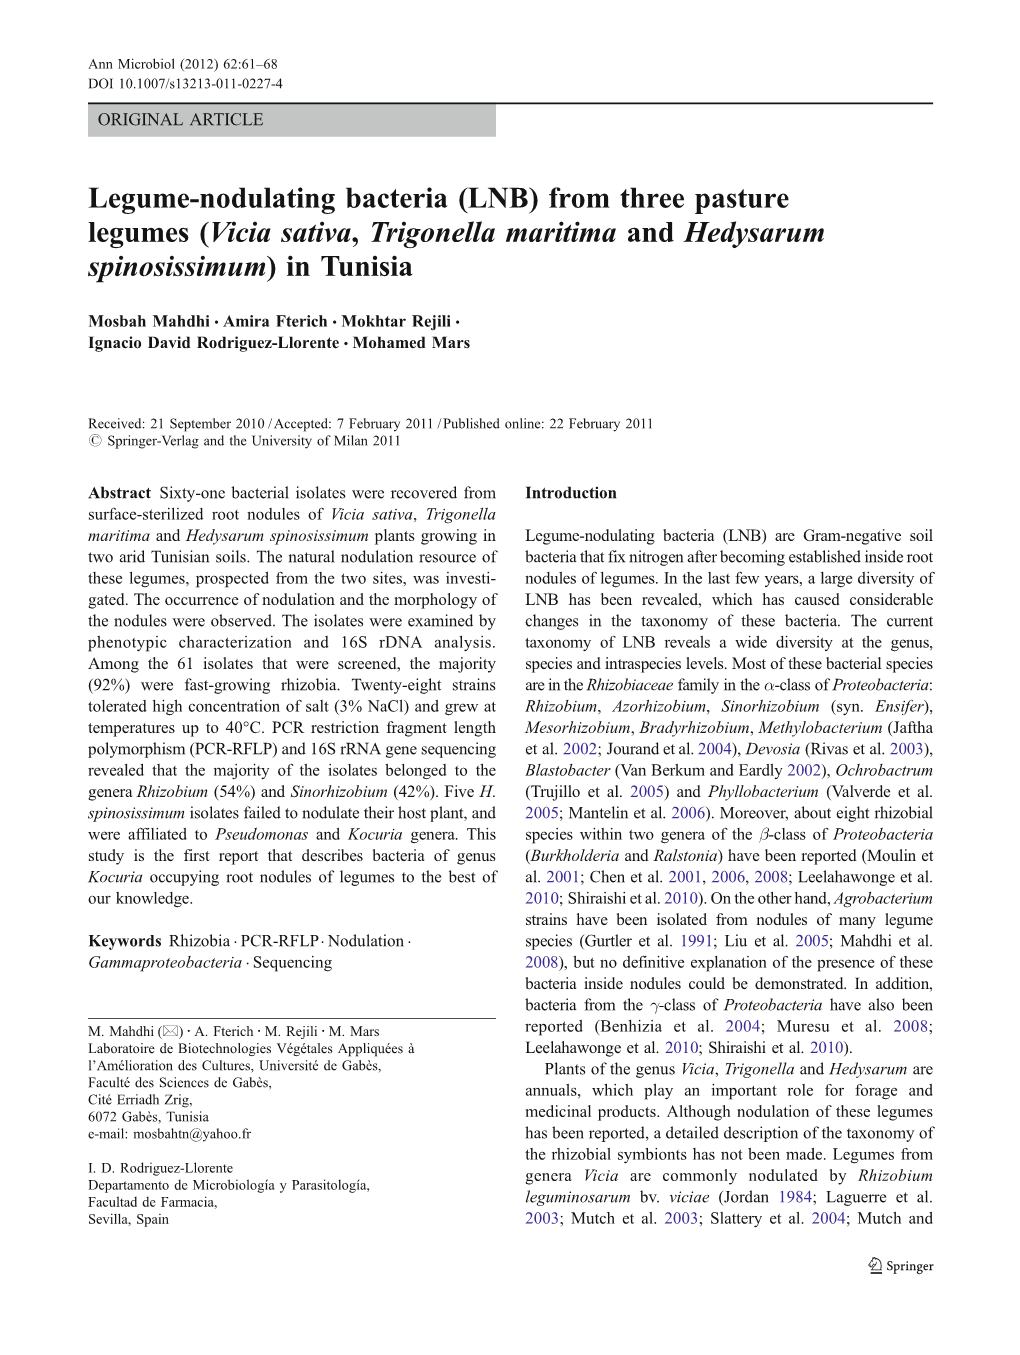 Legume-Nodulating Bacteria (LNB) from Three Pasture Legumes (Vicia Sativa, Trigonella Maritima and Hedysarum Spinosissimum) in Tunisia